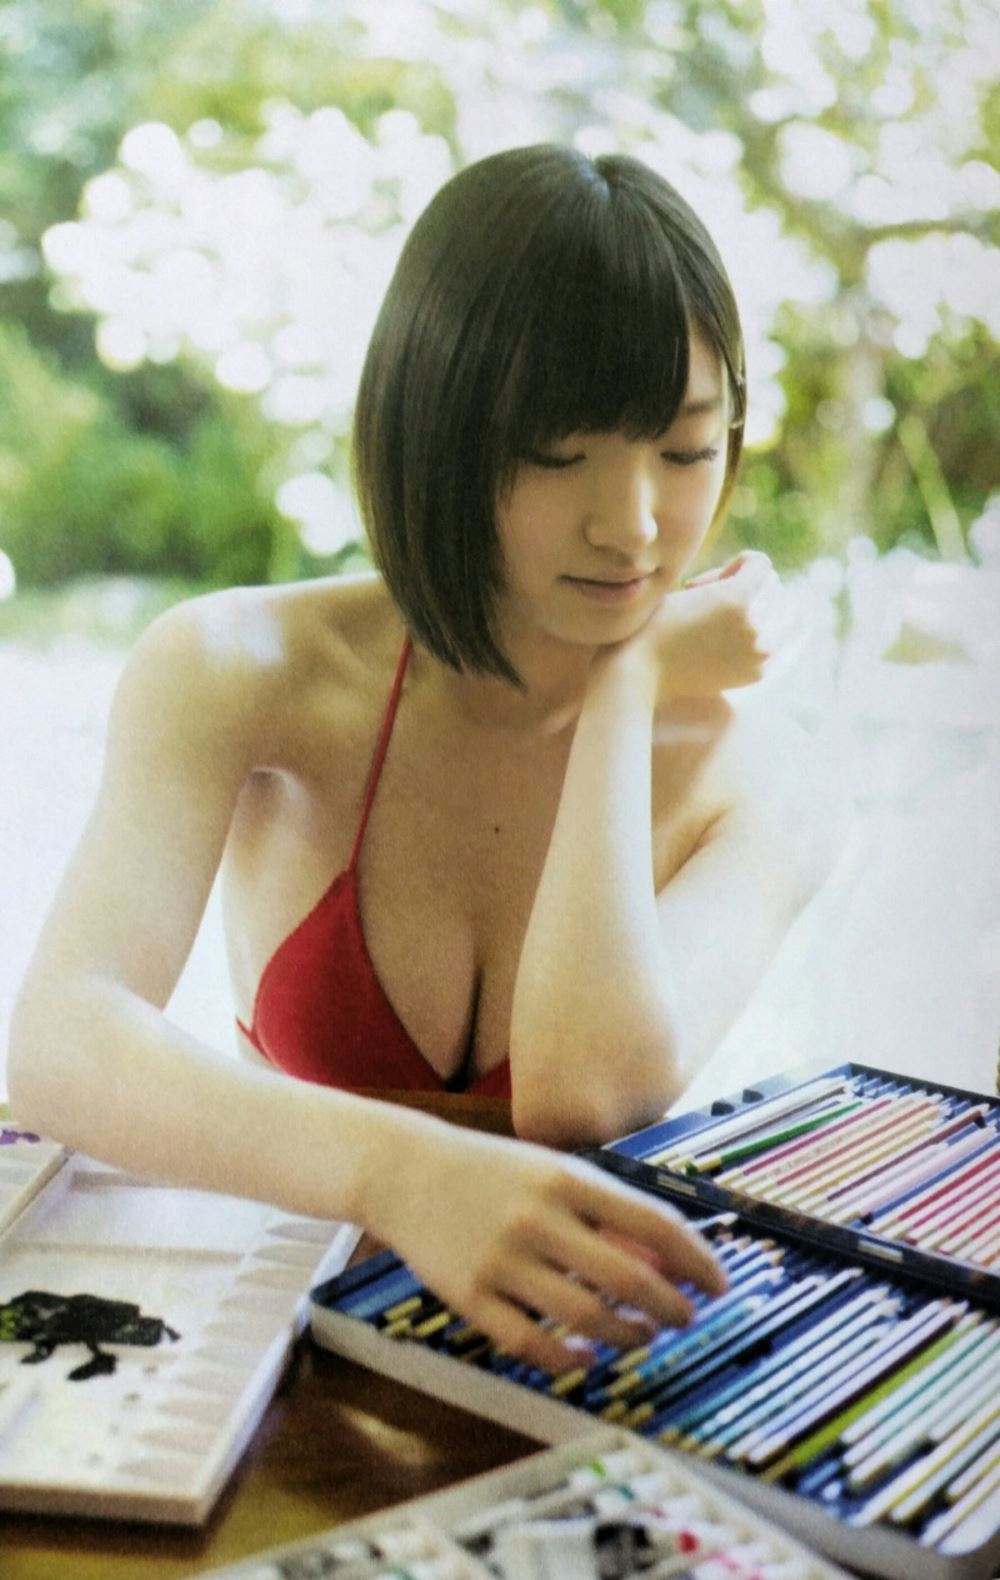 太田夢莉 1万年に1人 可愛い アイドル 水着 画像 52